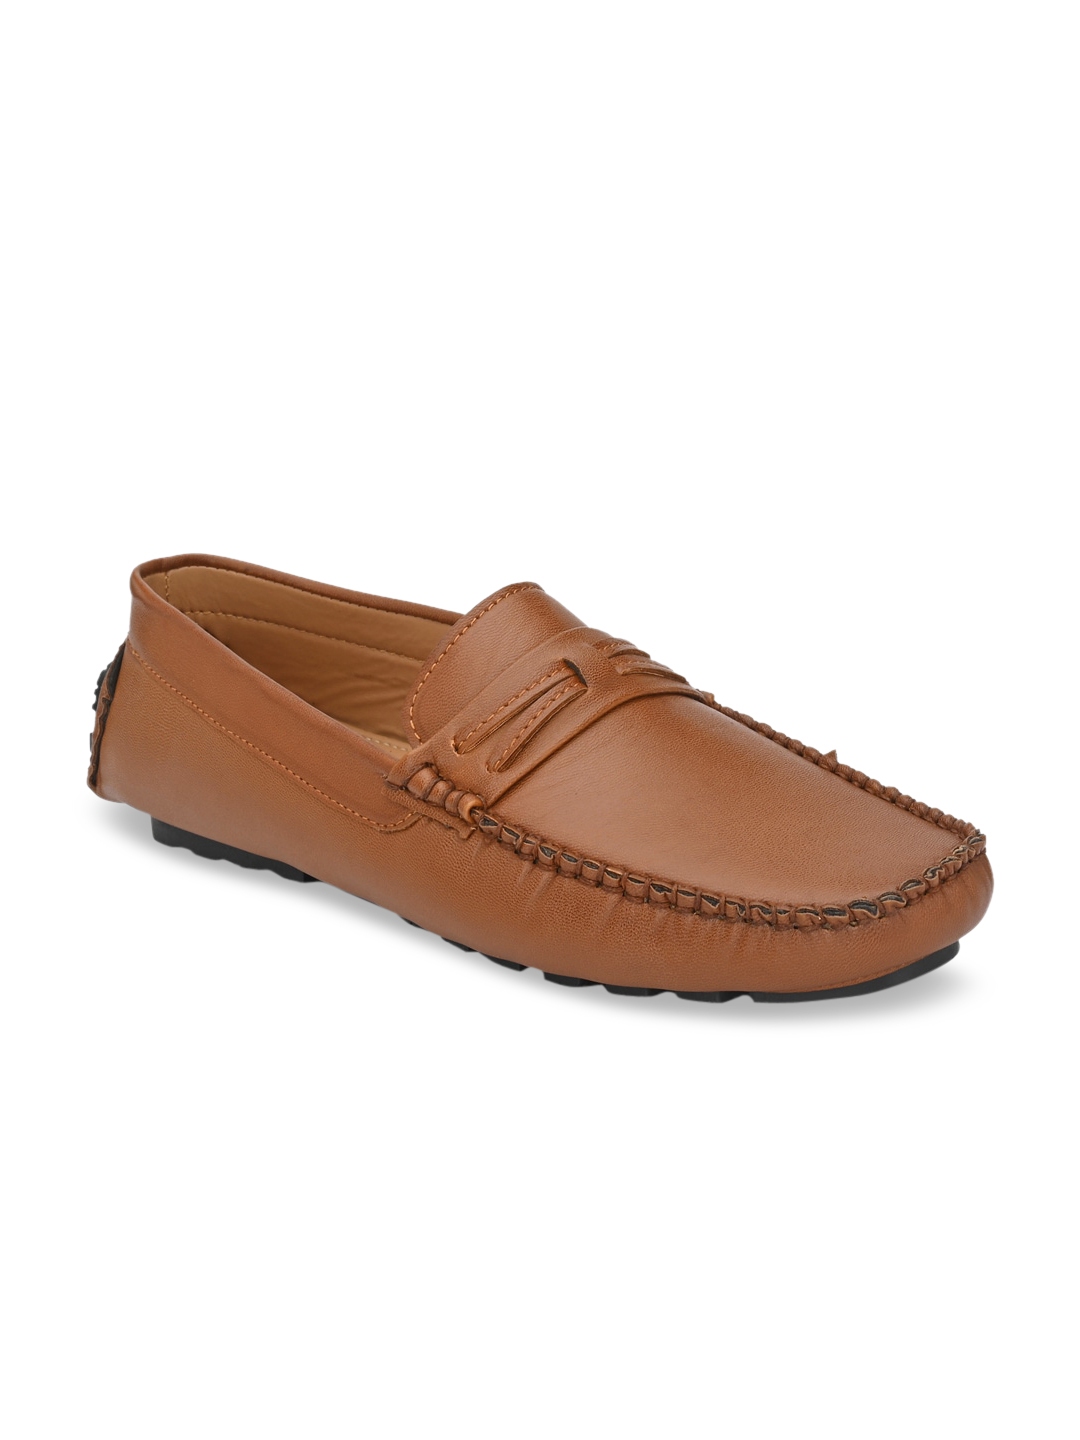 Buy Fentacia Men Tan Driving Shoes - Casual Shoes for Men 13926800 | Myntra